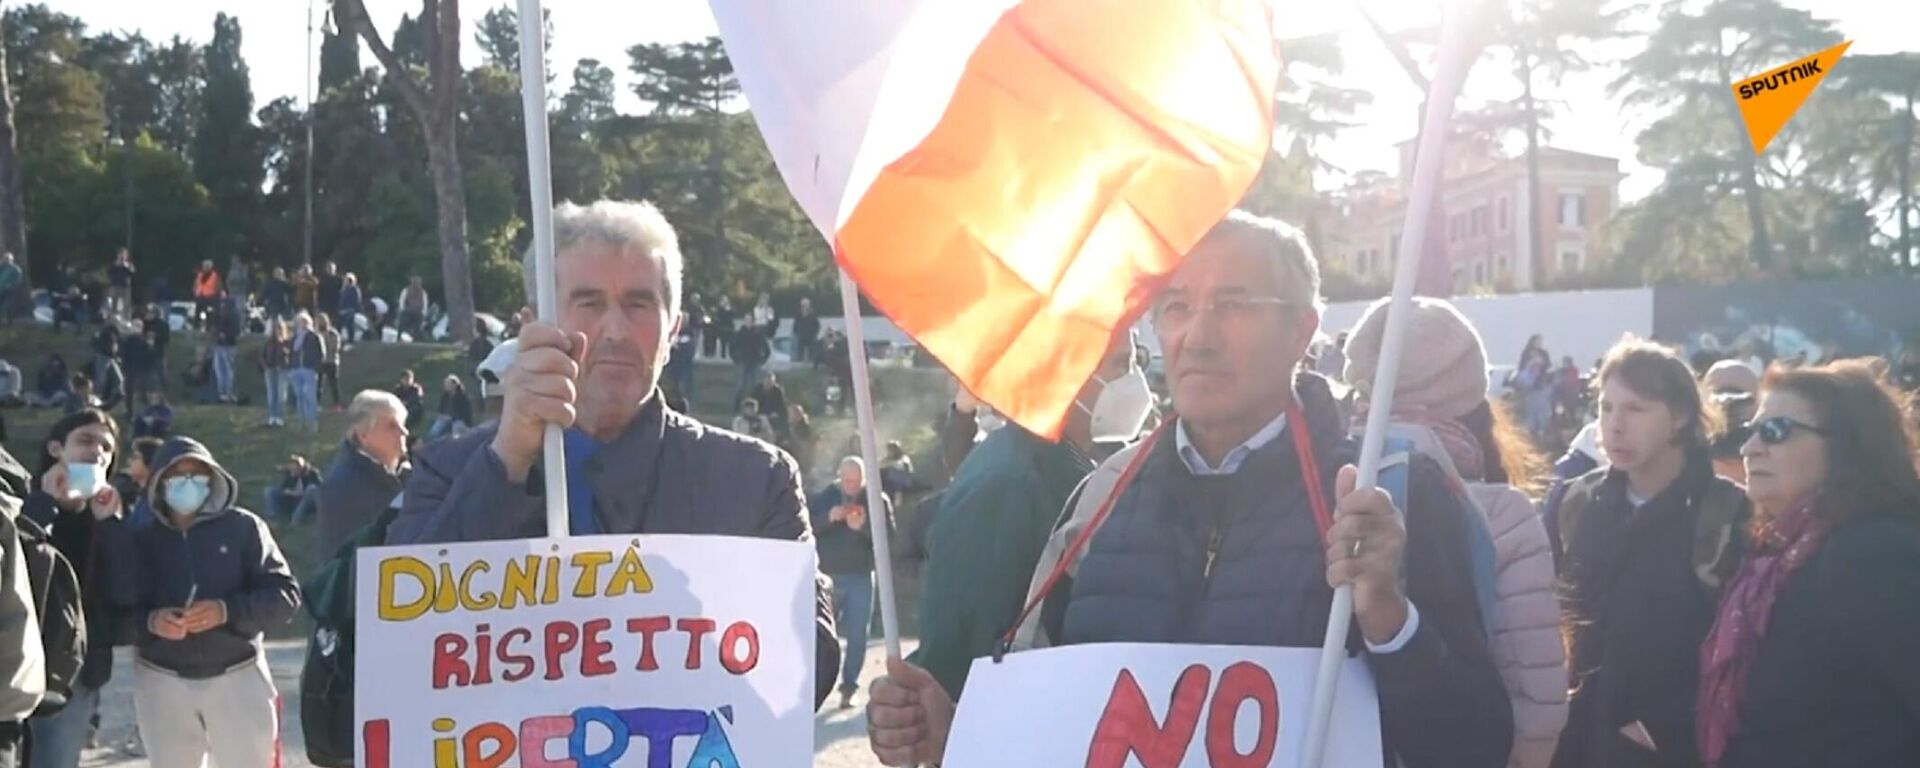 Protesti u Rimu - Sputnik Srbija, 1920, 16.10.2021